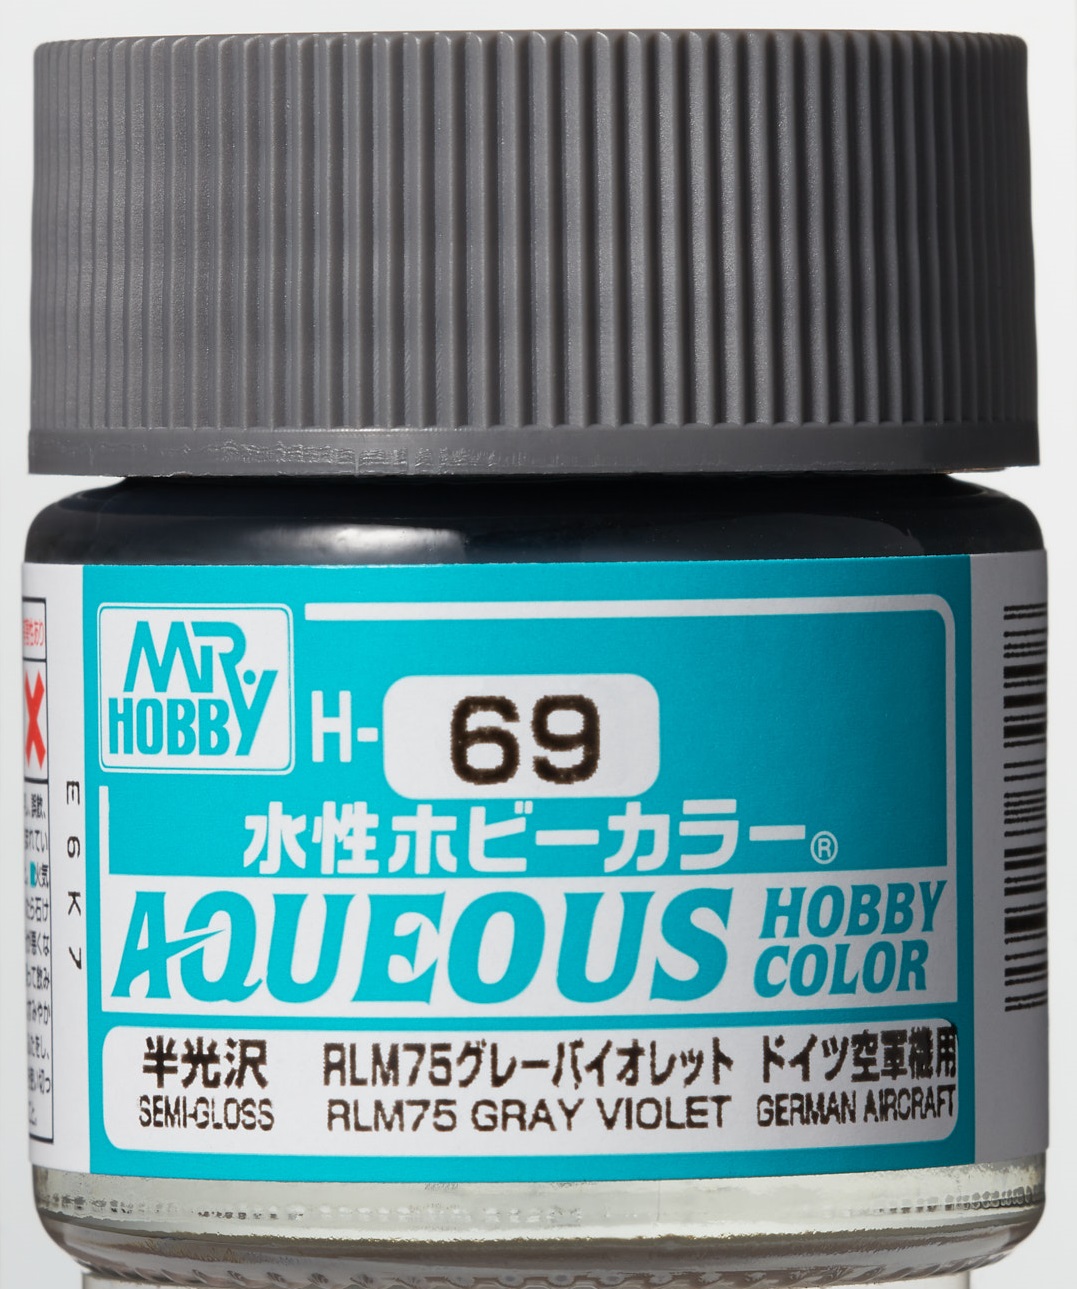 Mr. Aqueous Hobby Color - RLM 75 Gray Violet/Grey - H69 - RLM 75 Grau